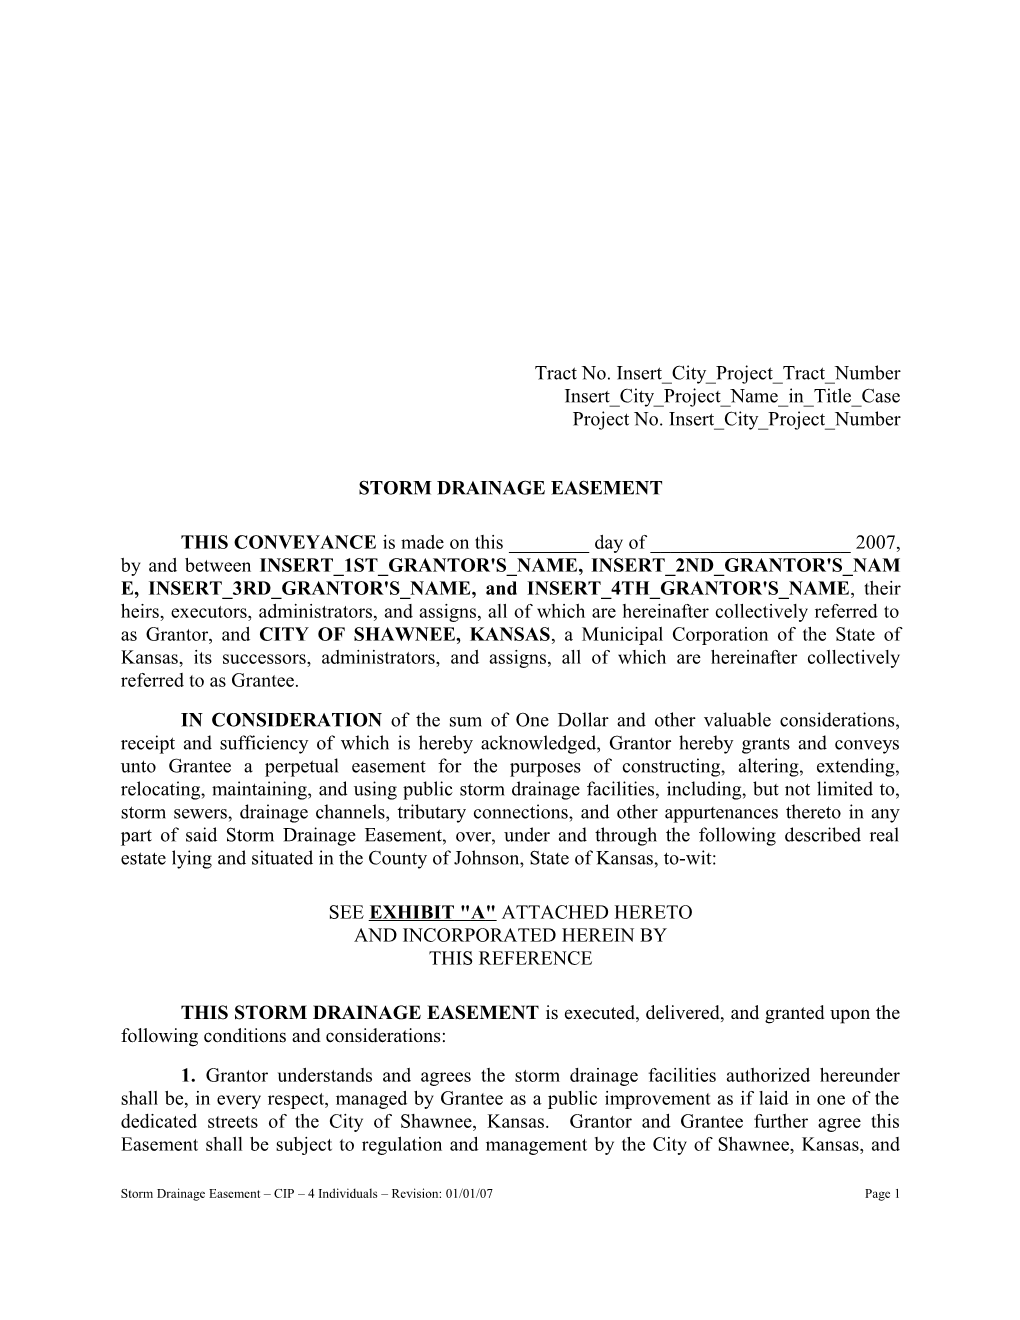 Storm Drainage Easement - CIP - 4 Individuals Form